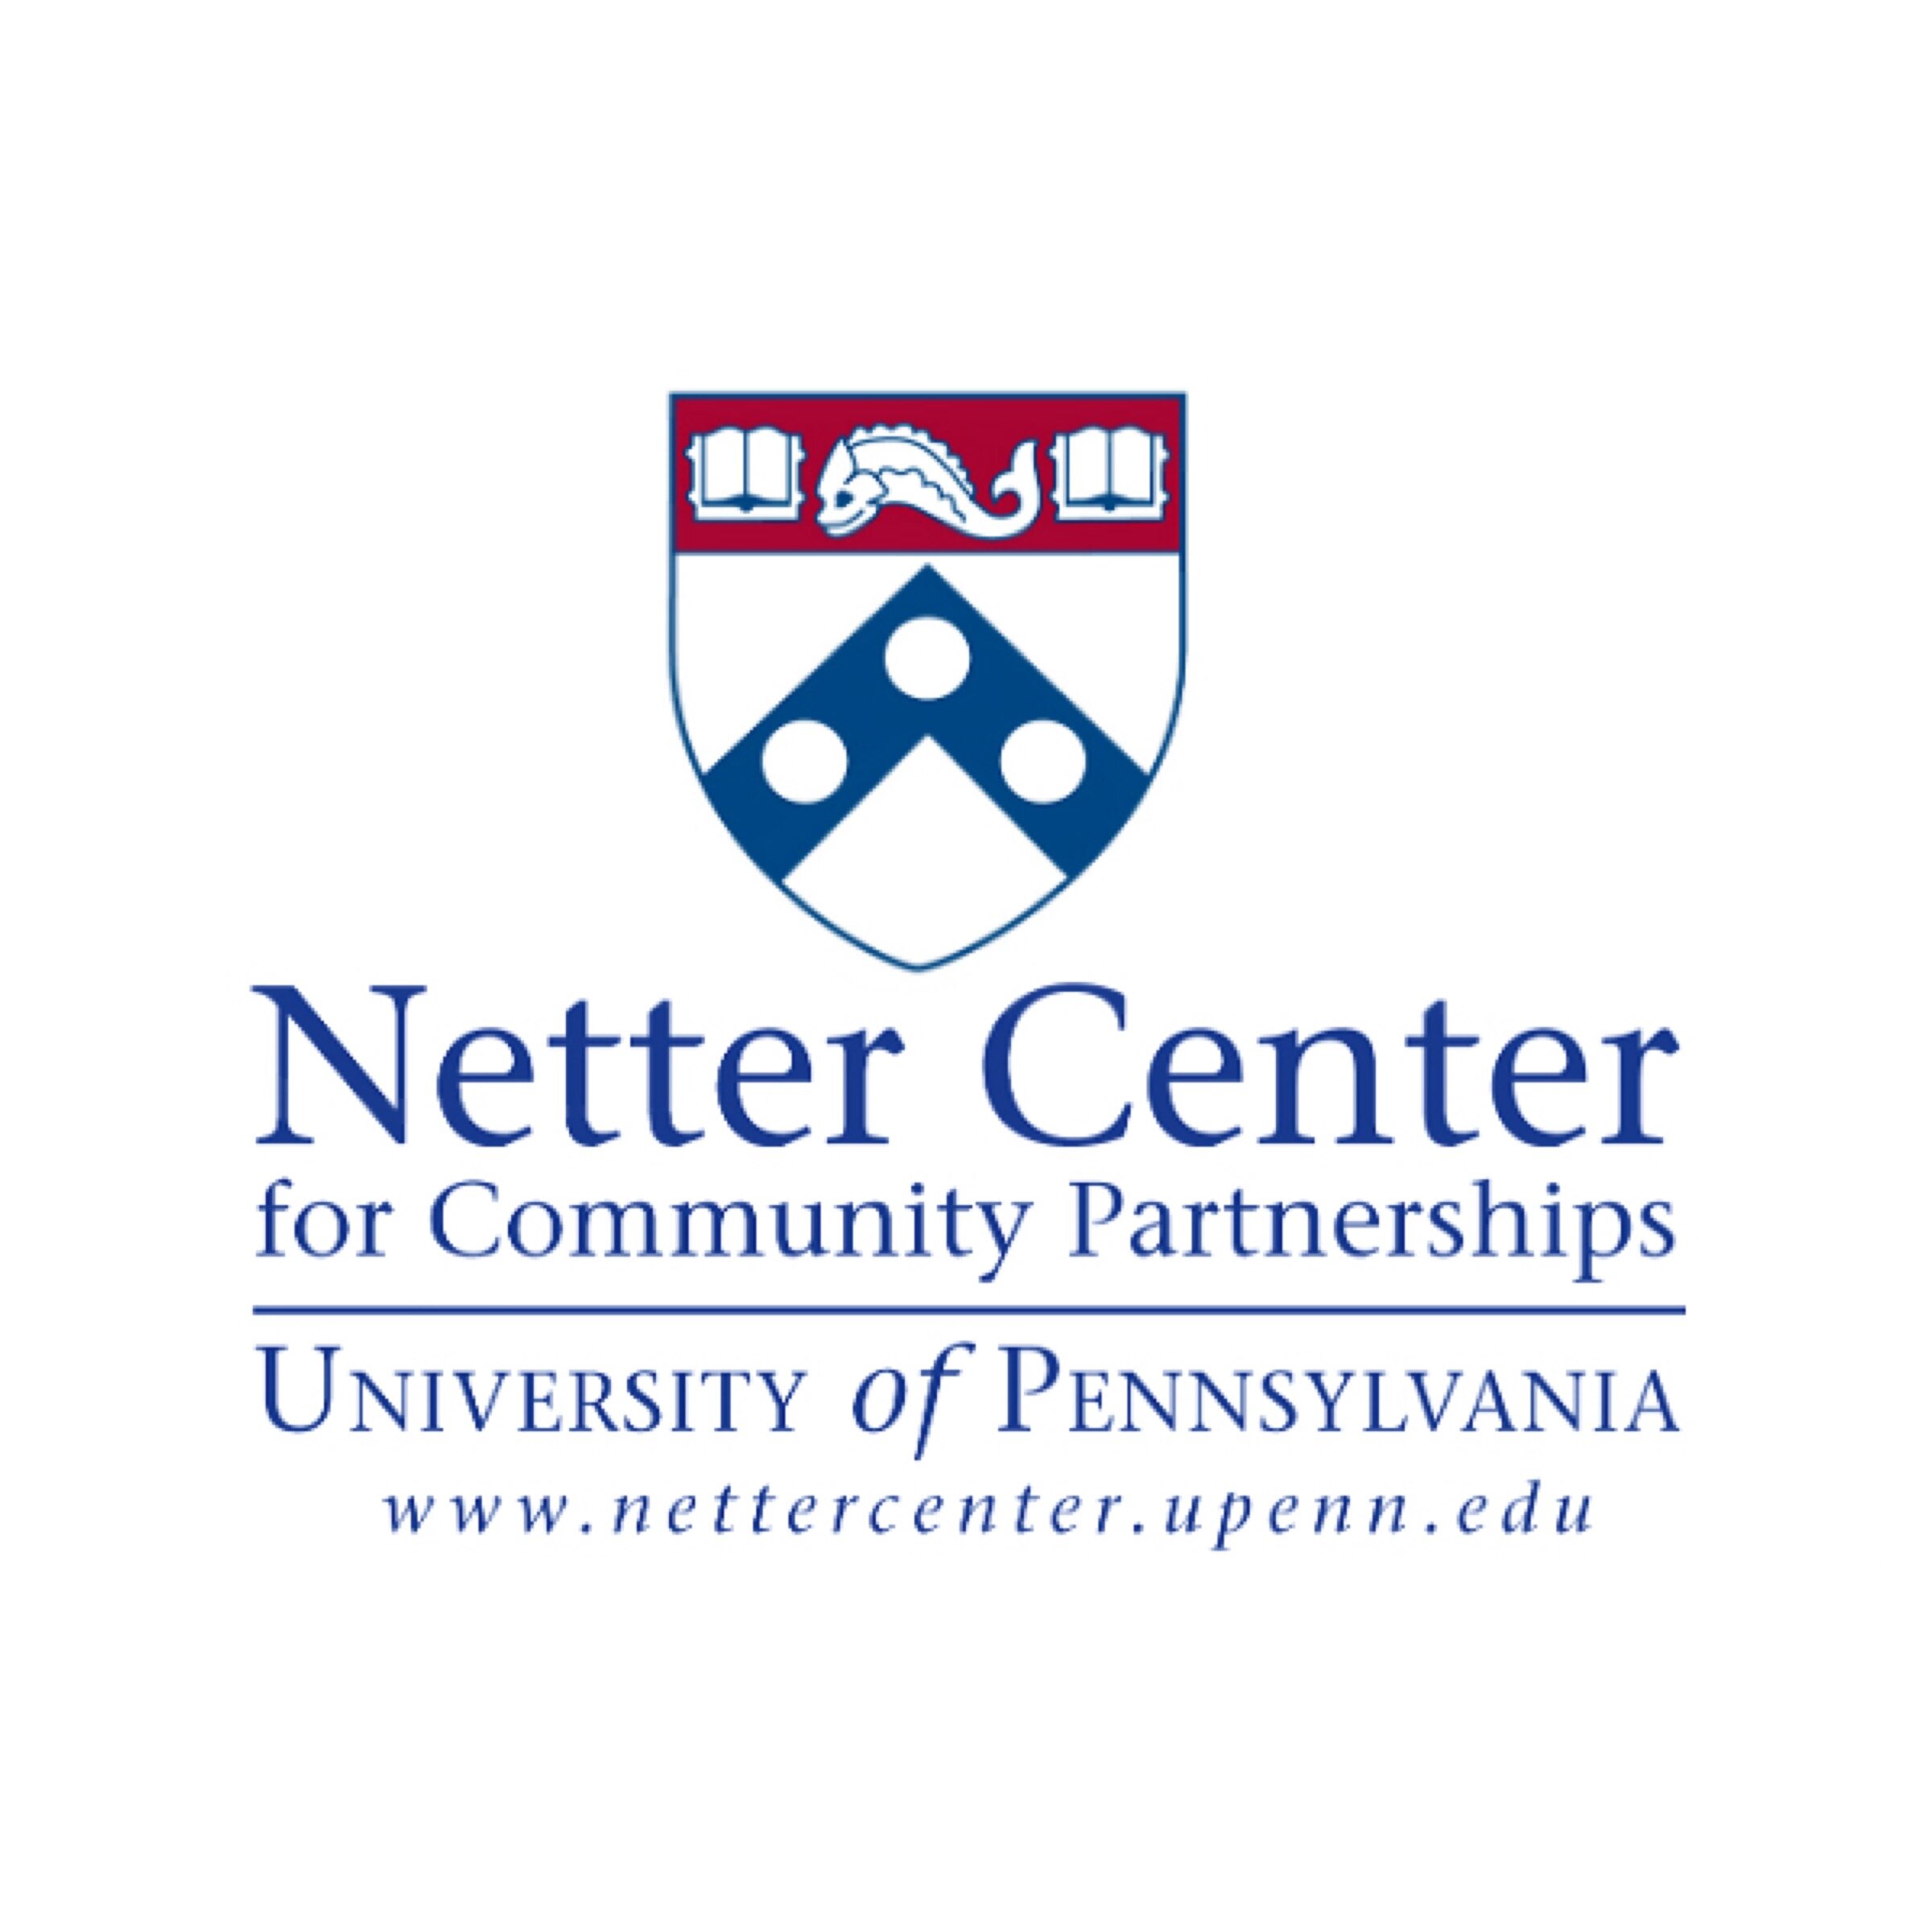 Netter_Center_for_Community_Partnerships.JPG